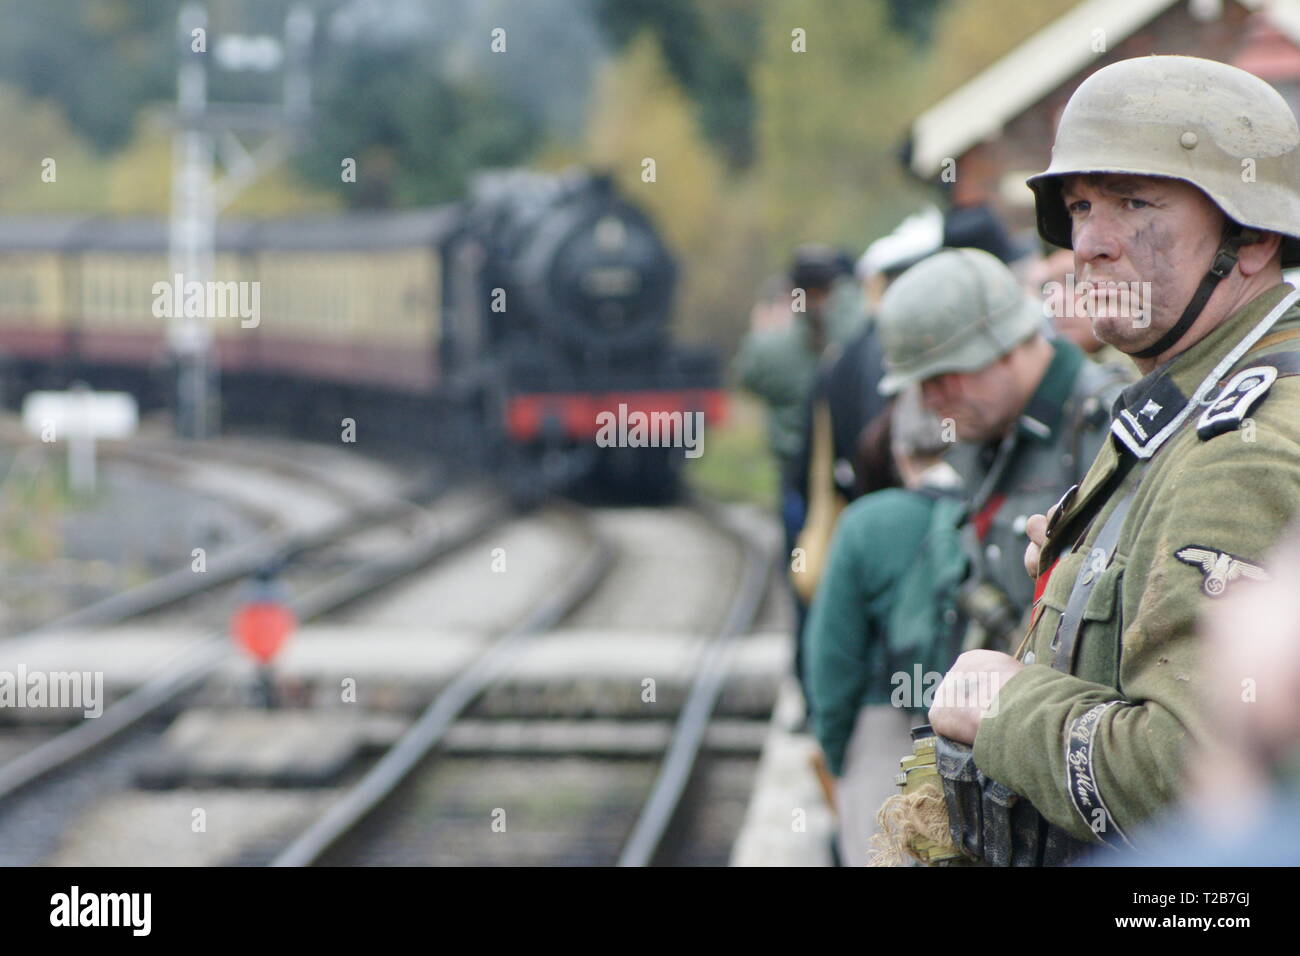 SS-Sonderkommandos reenactment on steam railway Stock Photo